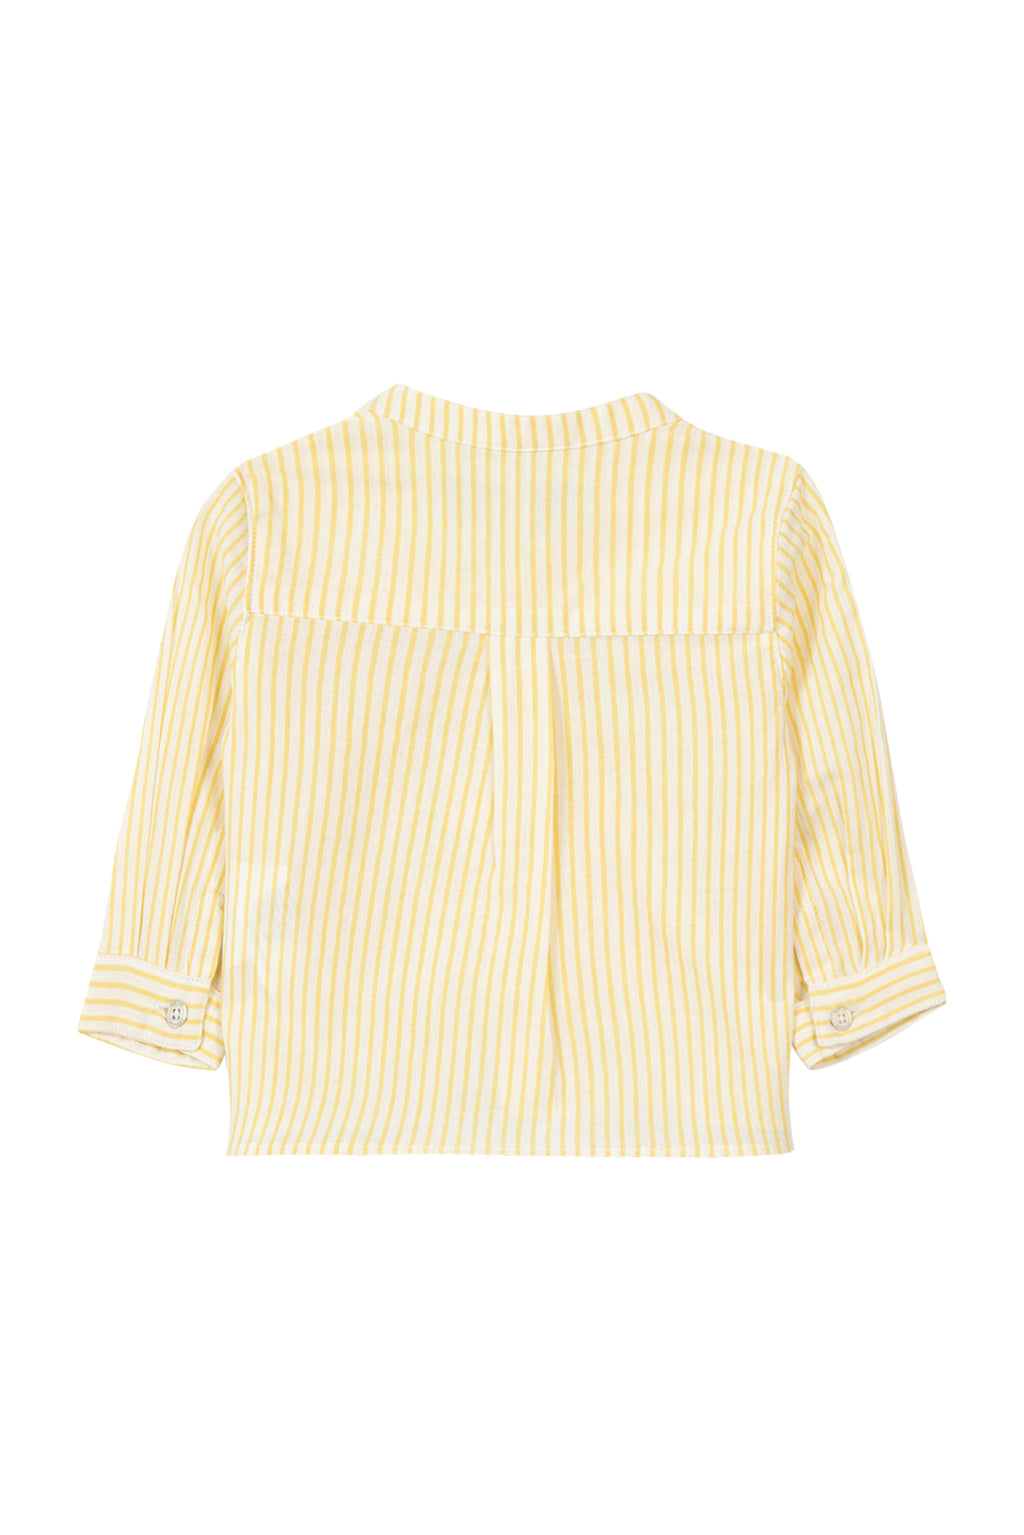 Shirt - Stripes Yellow pale